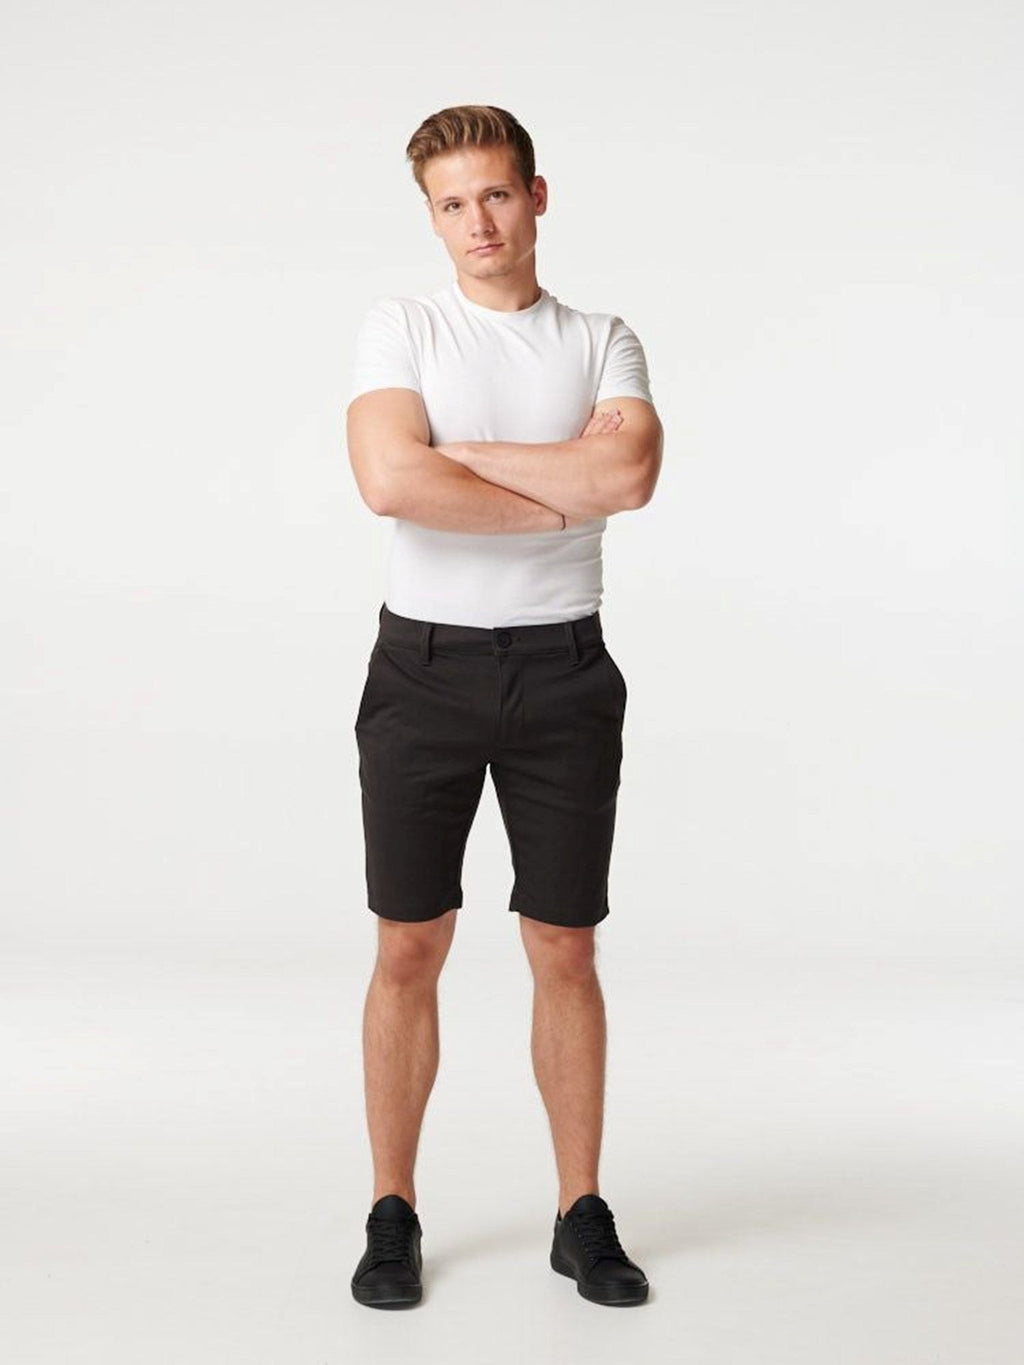 Τσιγγάνος Shorts - Σκούρο γκρίζο